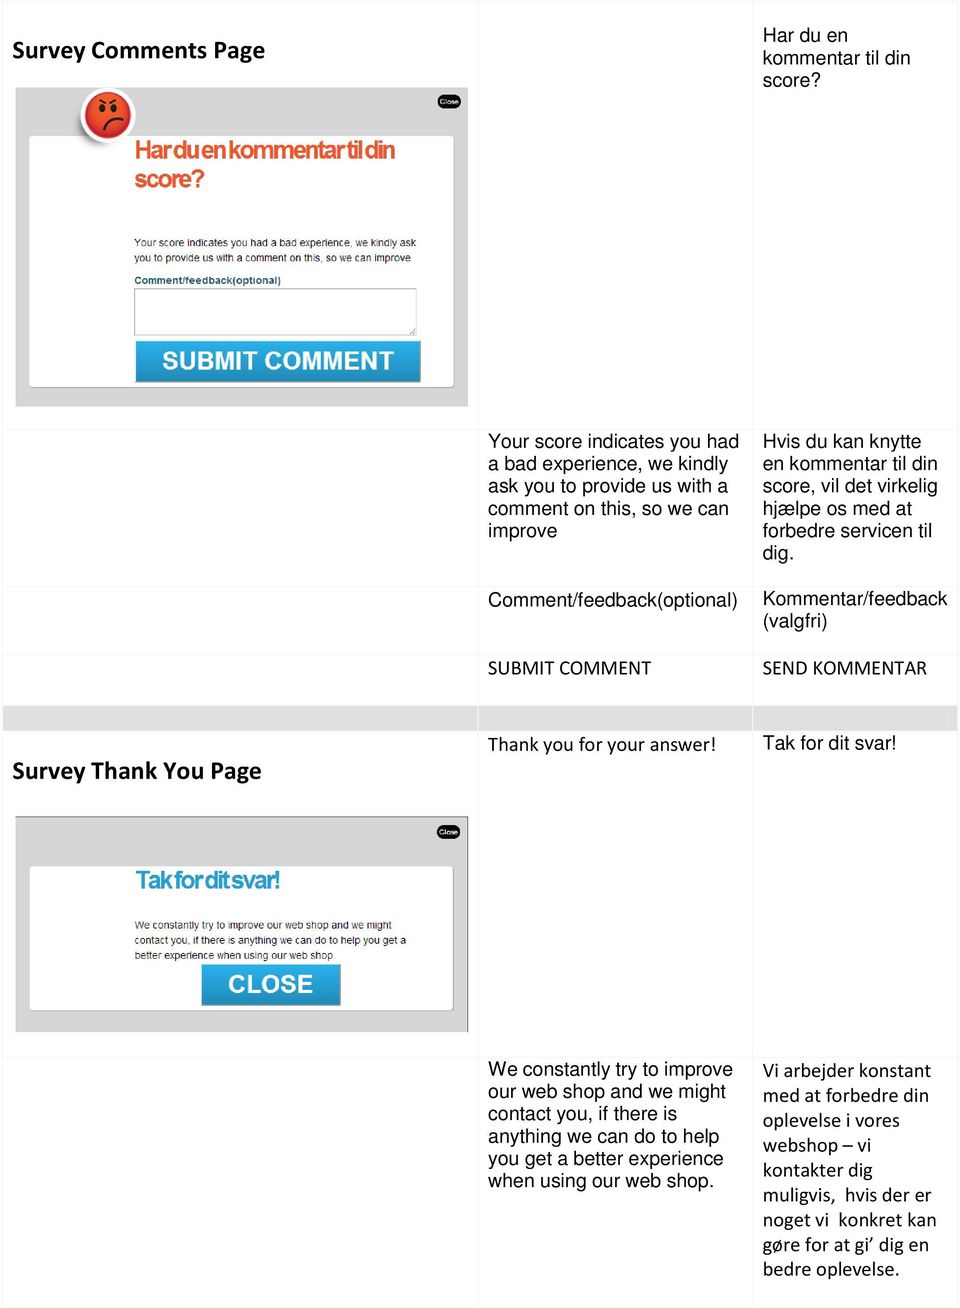 kommentar til din score, vil det virkelig hjælpe os med at forbedre servicen til dig. Kommentar/feedback (valgfri) SEND KOMMENTAR Survey Thank You Page Thank you for your answer!